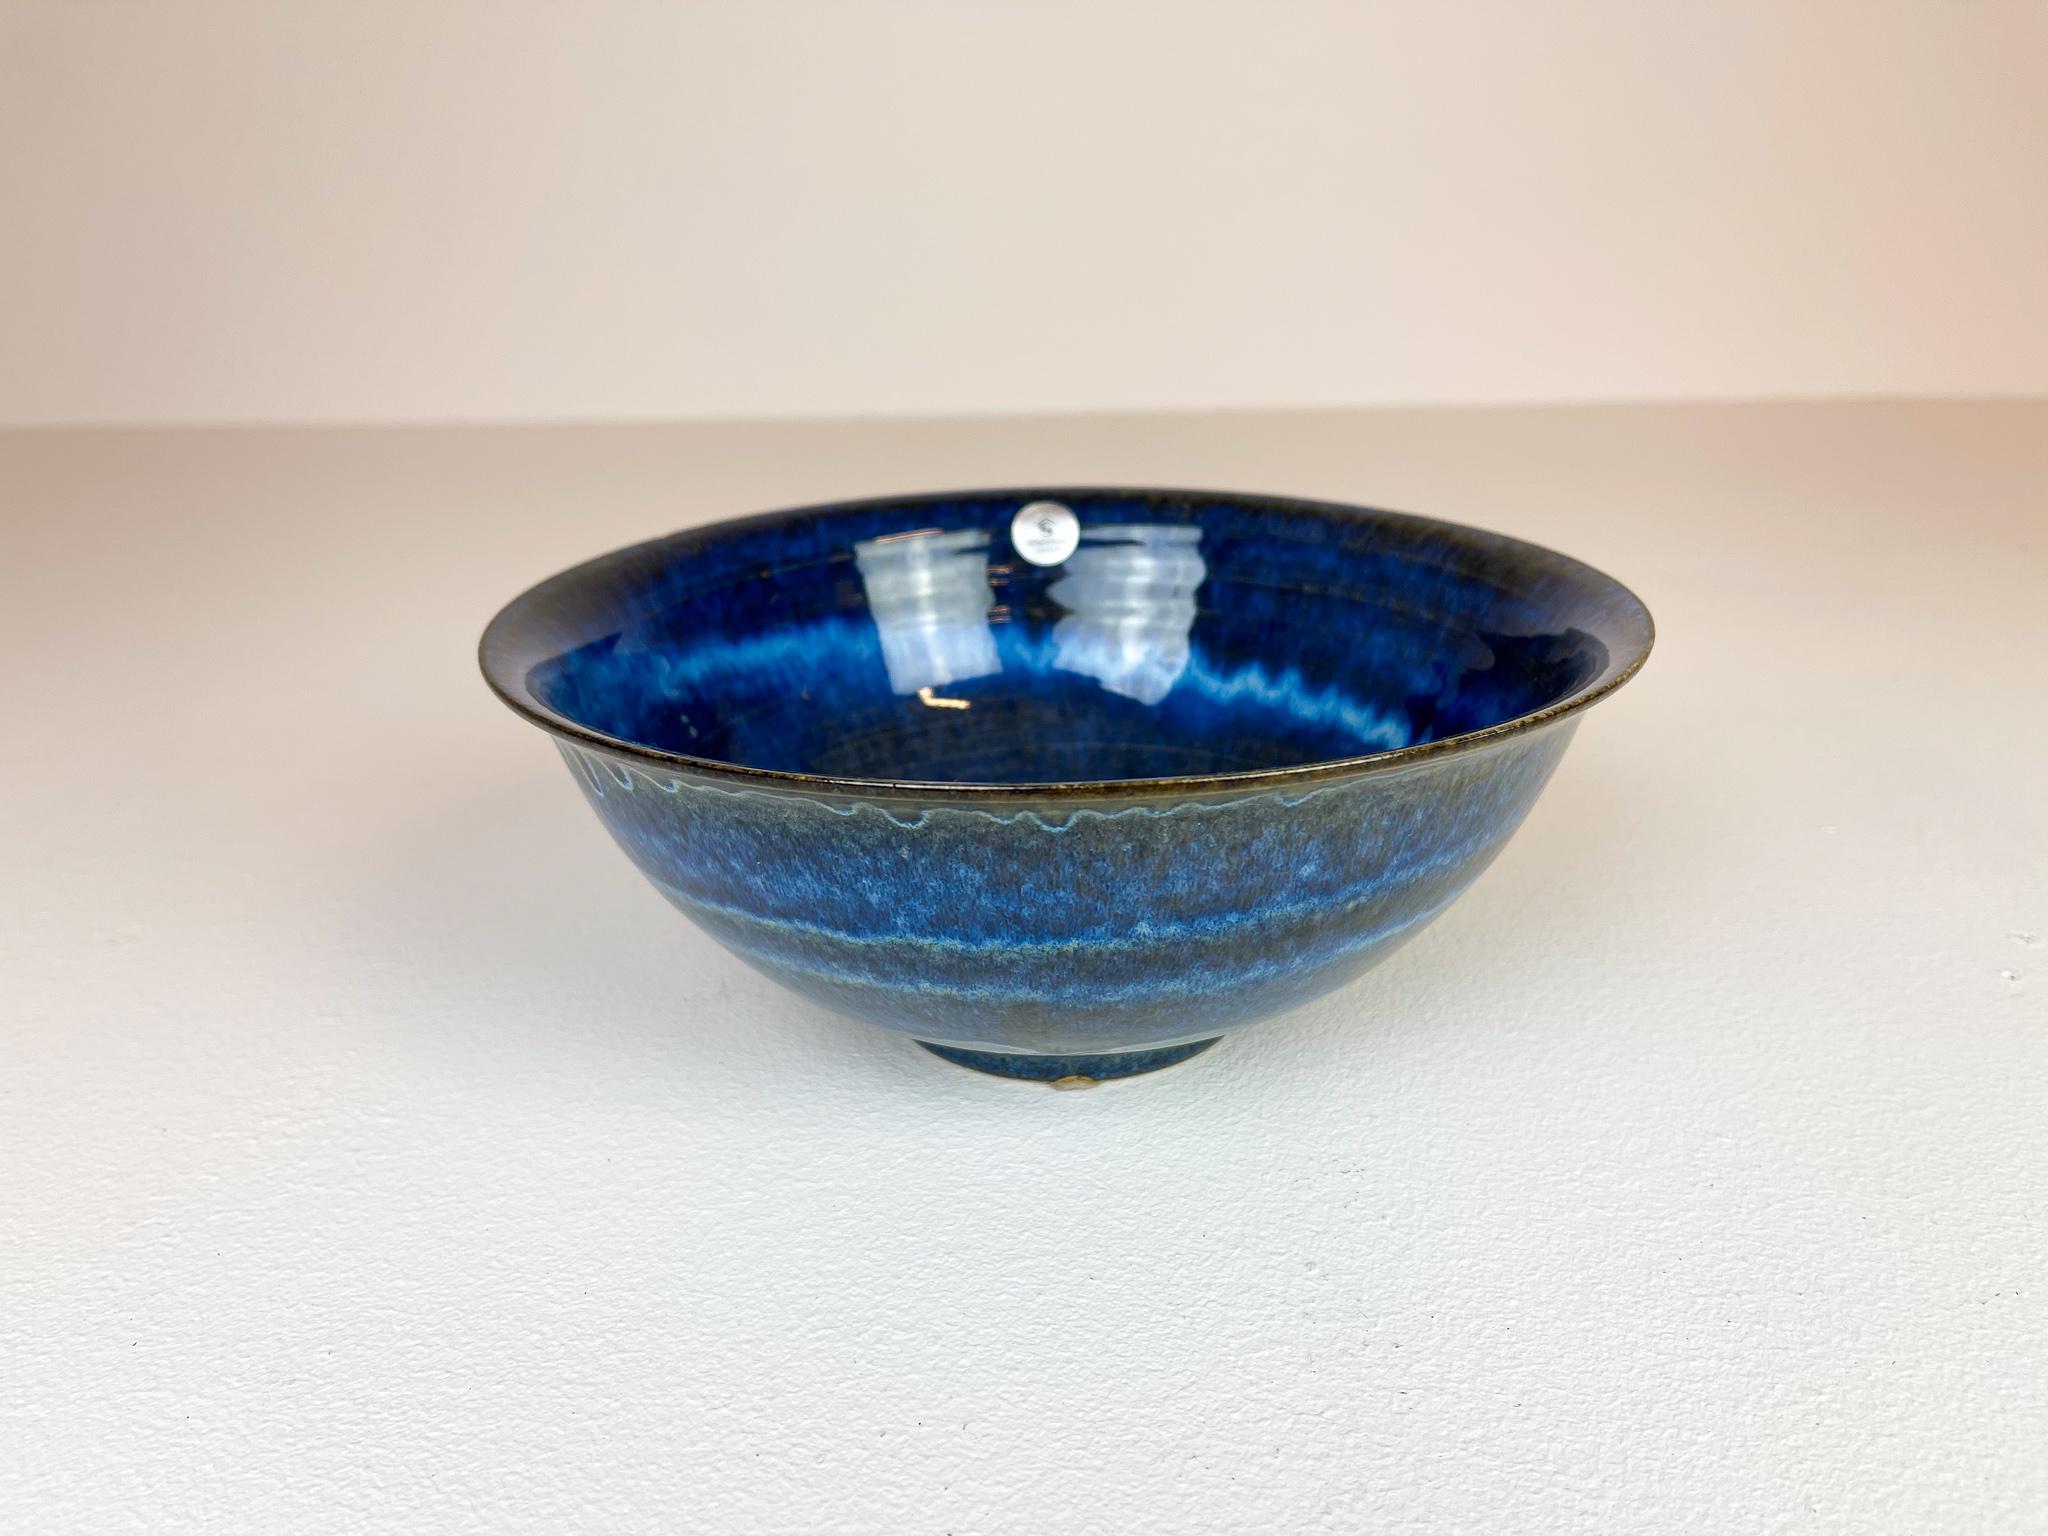 Scandinavian Modern Ceramic Bowls by Carl-Harry Stålhane Design Huset, Sweden For Sale 9